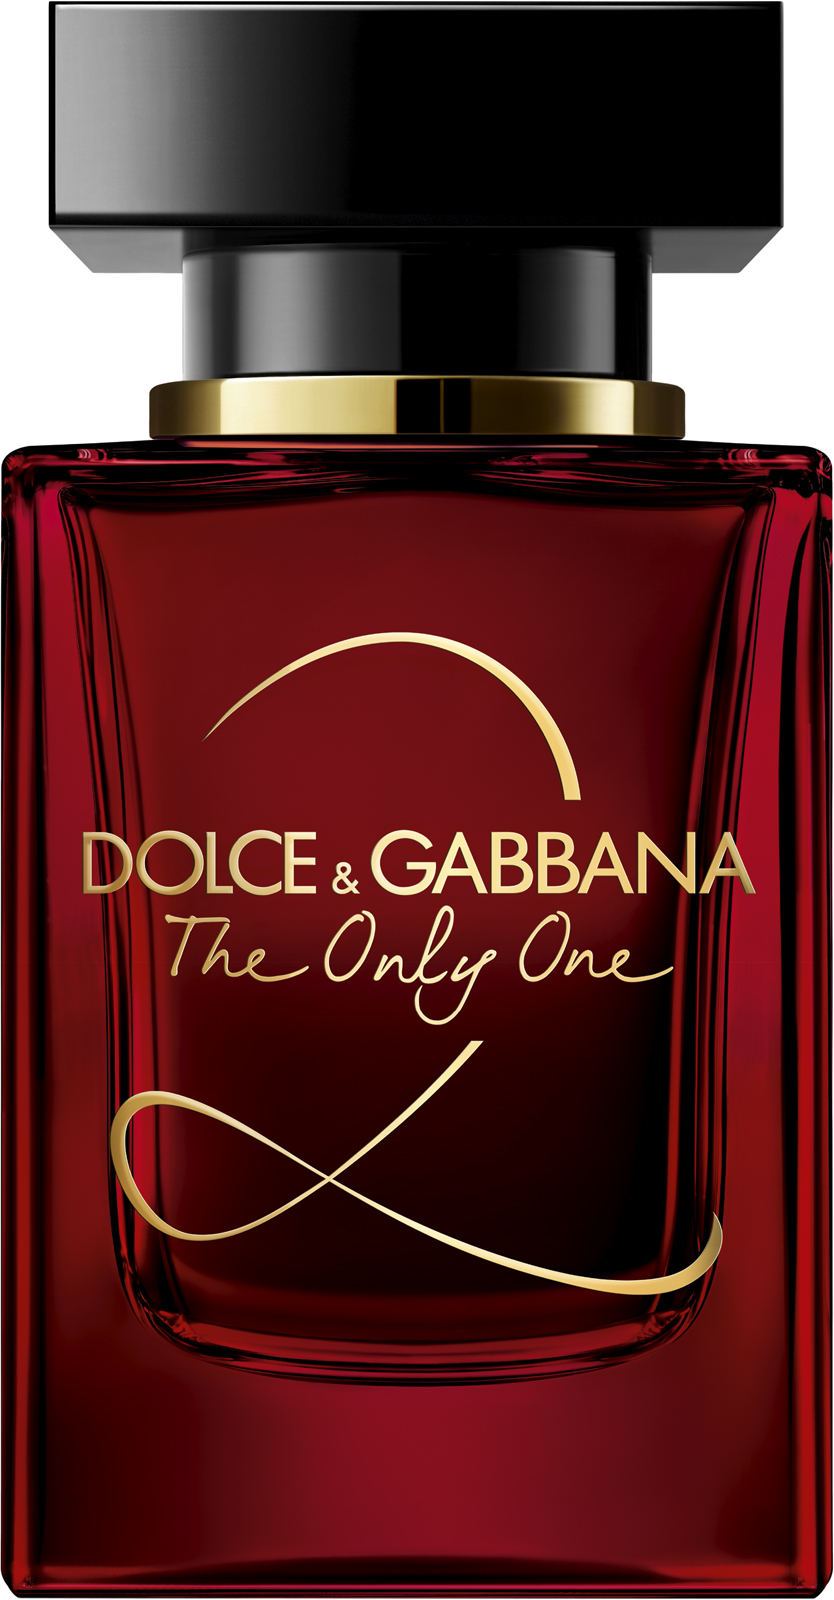 Дольче габбана ван цена. Dolce& Gabbana the only one 2 EDP, 100 ml. Dolce Gabbana the only one 30 мл. Dolce Gabbana the only one 2 100 мл. Dolce Gabbana the only one 50ml.